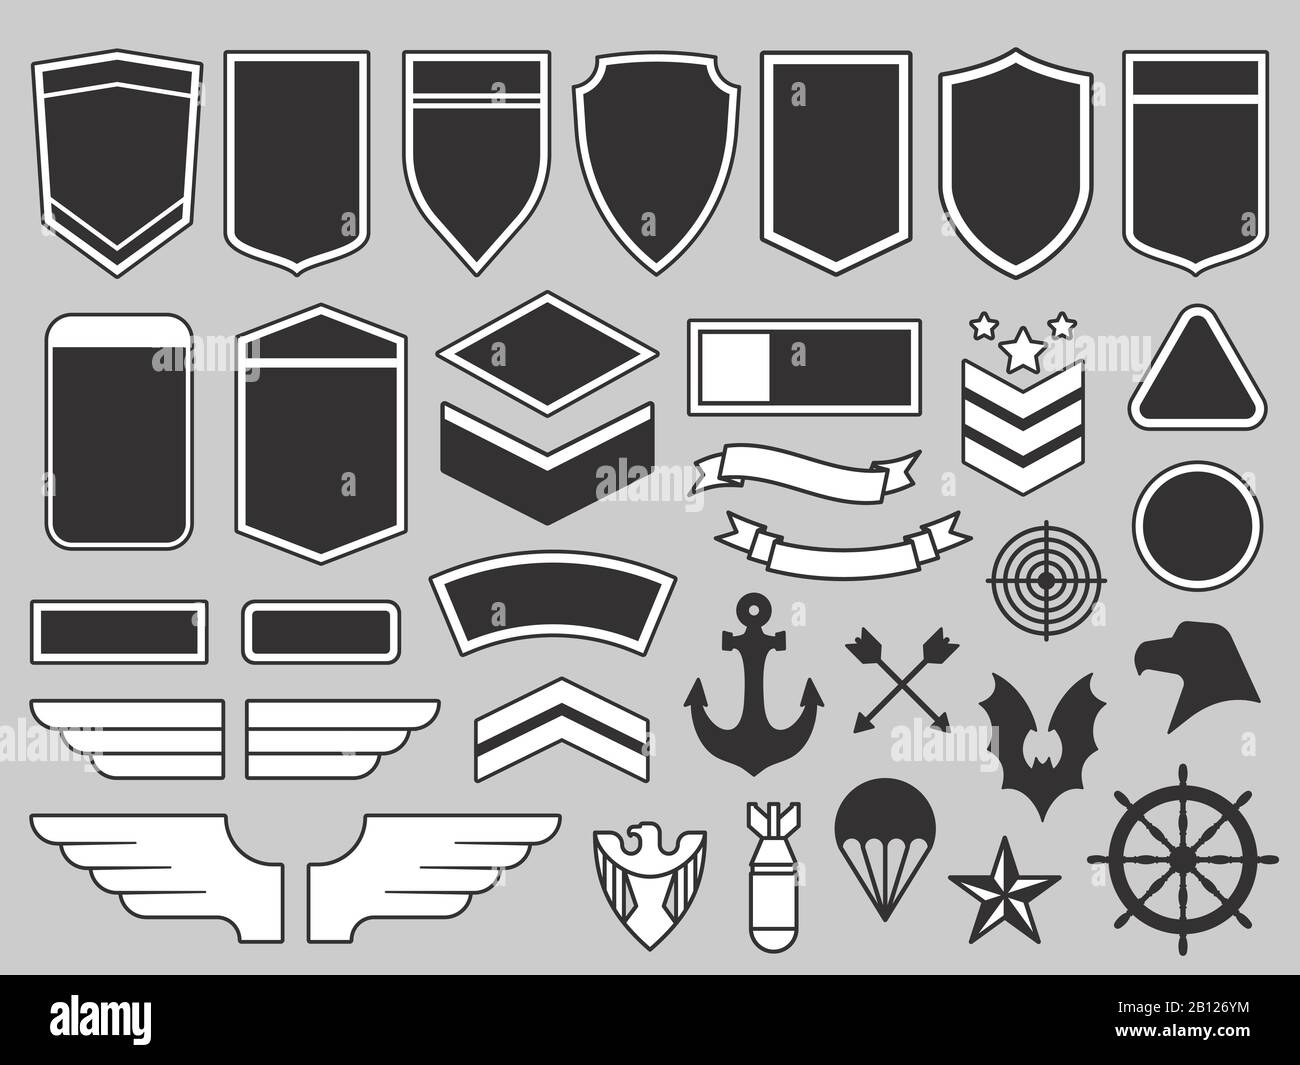 Juego de parches de ramas militares - Parches militares circulares de 3  pulgadas (uno cada uno: Fuerza Aérea, Ejército, Guardia Costera, Marina